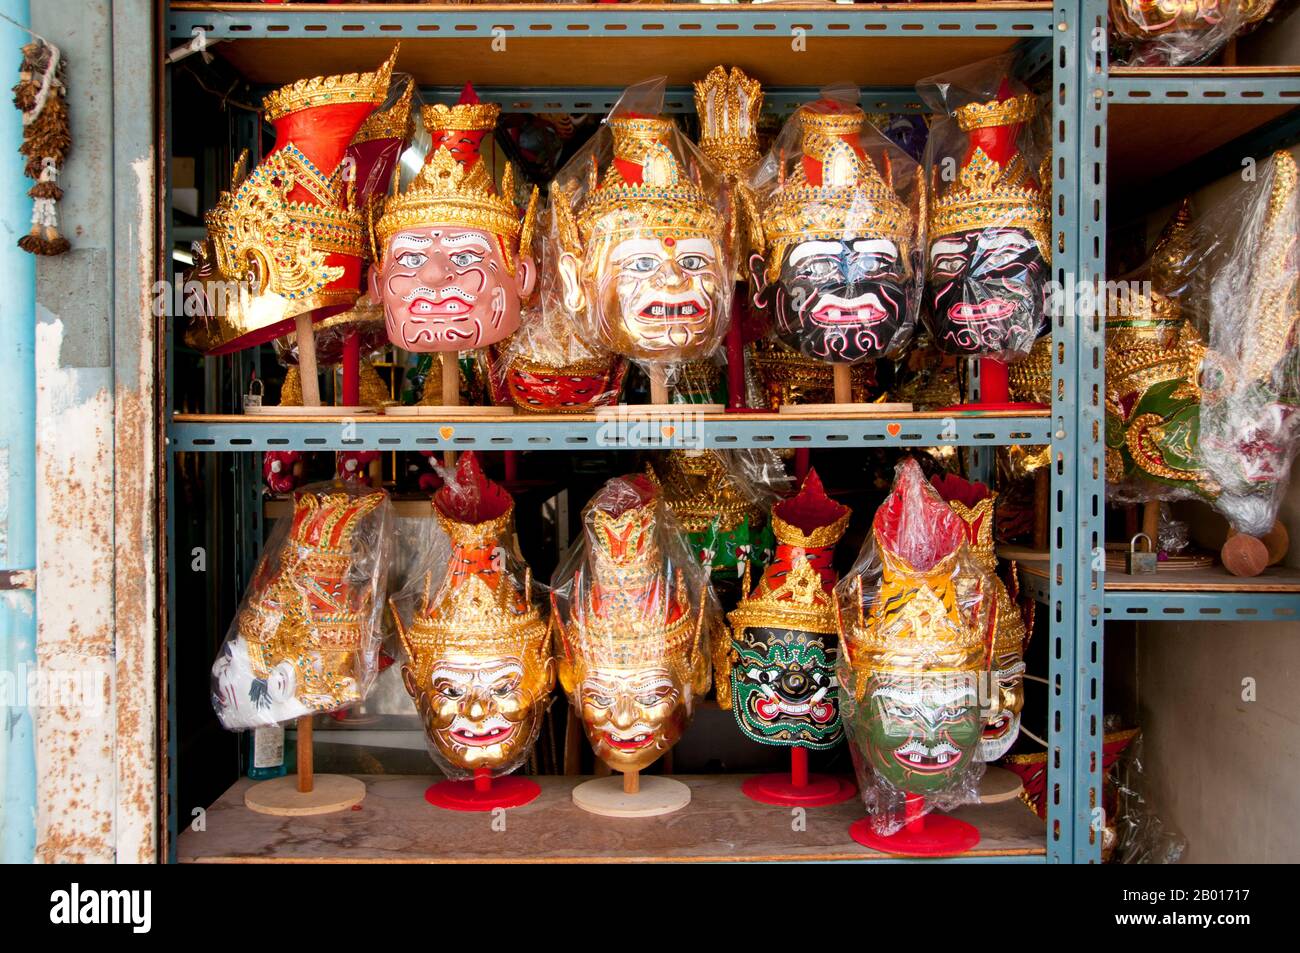 Thailandia: Maschere Khon, amuleto e paraphernalia mercato religioso a Wat Ratchanatda, Bangkok. Khon è un dramma di danza classica thailandese che spesso incorpora personaggi del Ramakien, la propria interpretazione della classica Ramayana indiana da parte della Thailandia. Il mercato della paraphernalia religiosa all'interno dei terreni di Wat Ratchanatda vende immagini di Buddha e fascino buddista in tutte le forme e dimensioni, nonché una varietà di divinità indù indiane e articoli religiosi cinesi. Wat Ratchanadfaram fu costruito su ordine del re Nangklao (Rama III) per la mamma Chao Ying Sommanus Wattanavadi nel 1846. Foto Stock